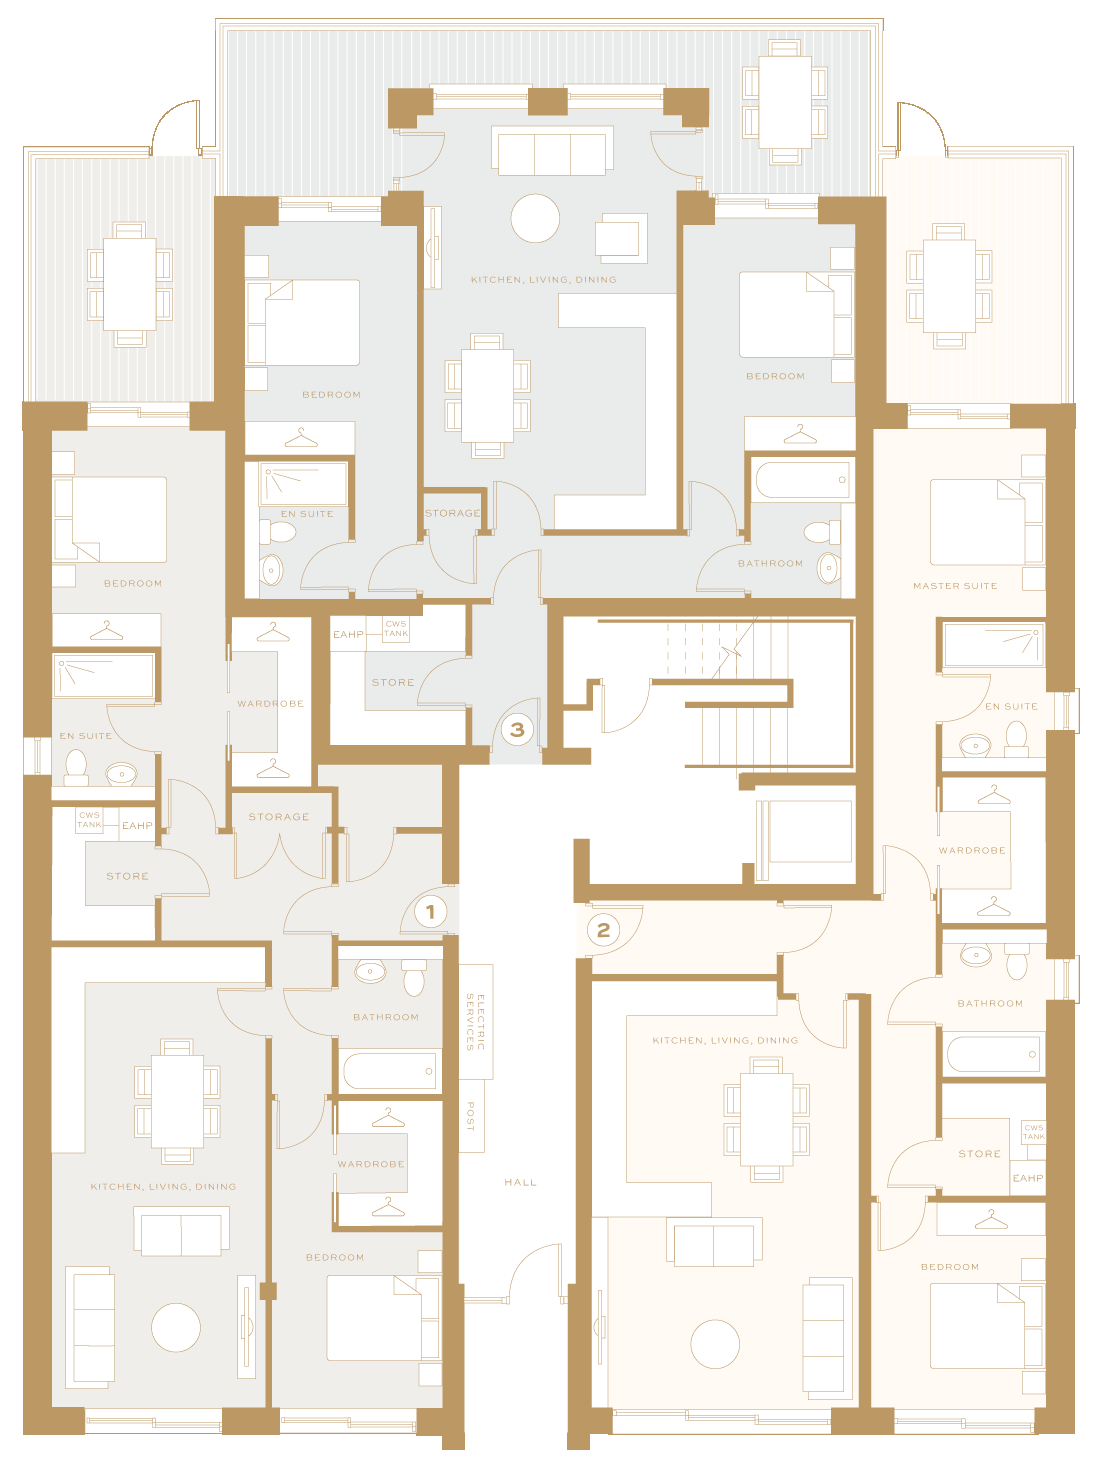 Ground Floor Floor Plans